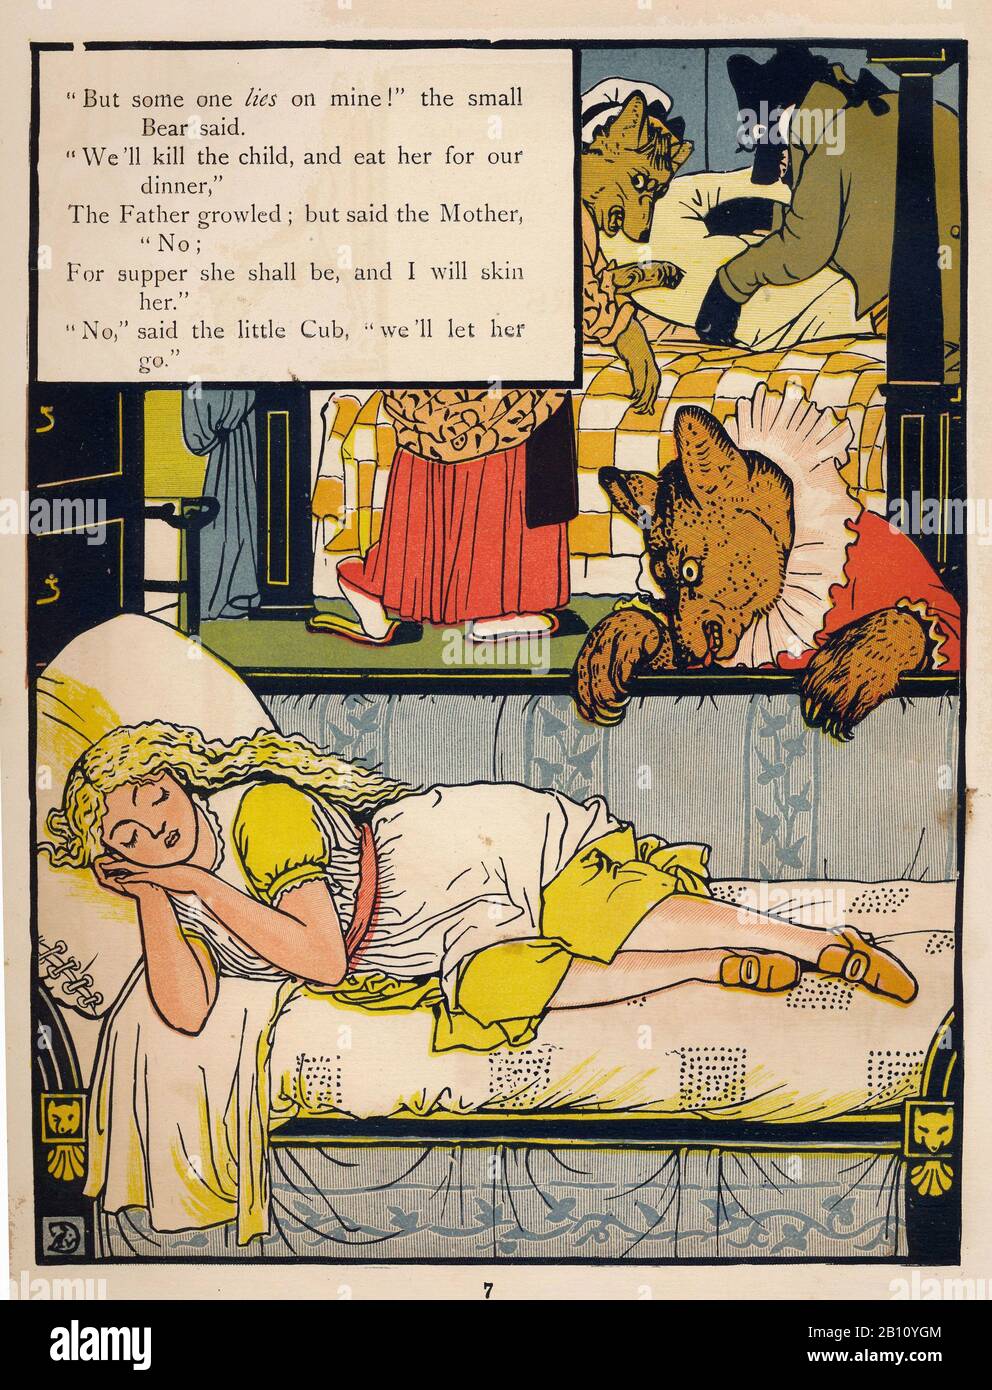 Das Bilderbuch der drei Bären - 1874 - Illustration von Walter Cane (23-15) Stockfoto